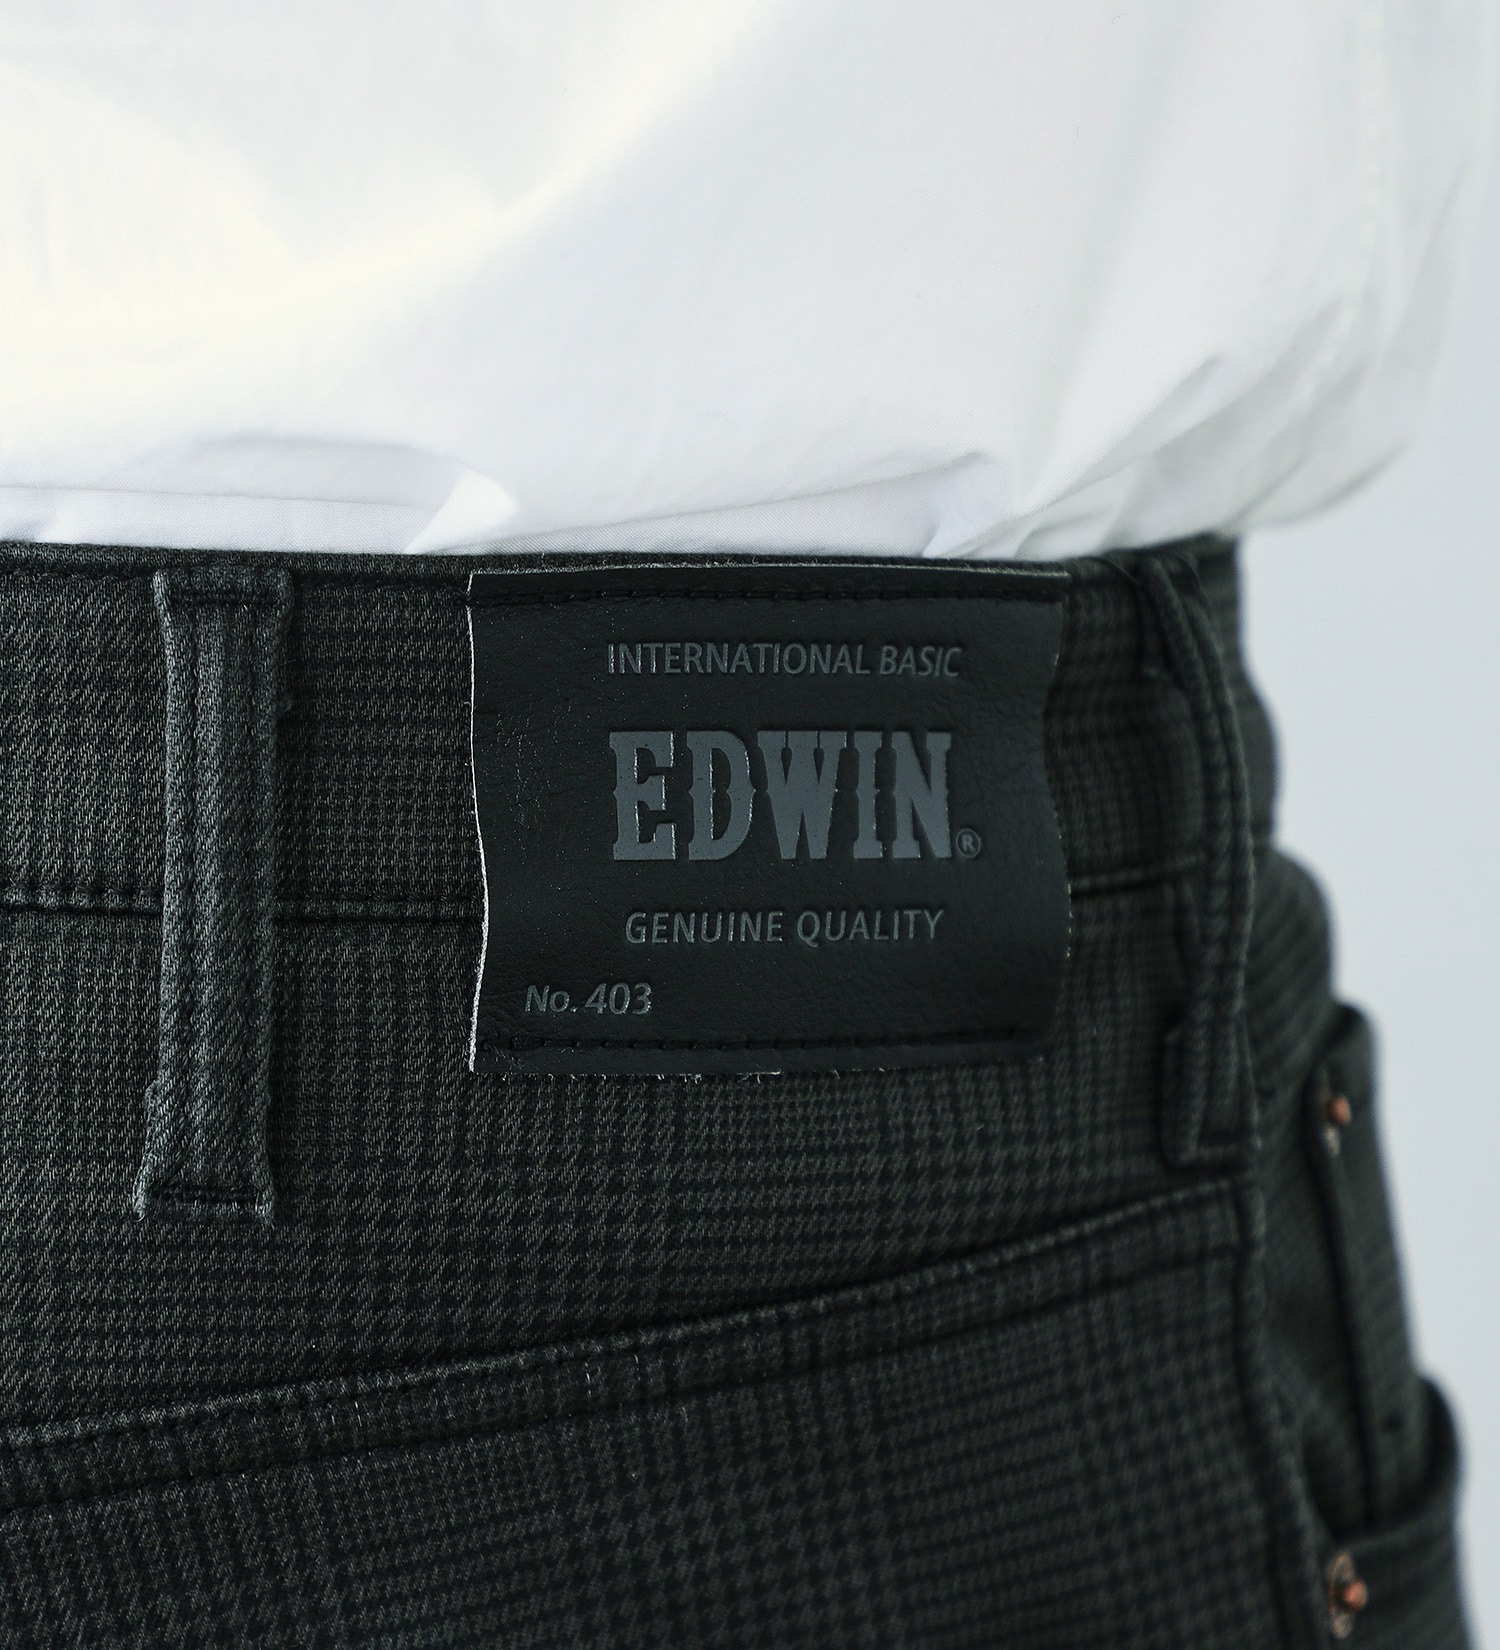 EDWIN(エドウイン)の【BLACKFRIDAY】【大きいサイズ】2層で暖かい EDWIN インターナショナルベーシック レギュラーストレートパンツ403 WILD FIRE 2層ボンディング構造 【暖】|パンツ/パンツ/メンズ|チェック